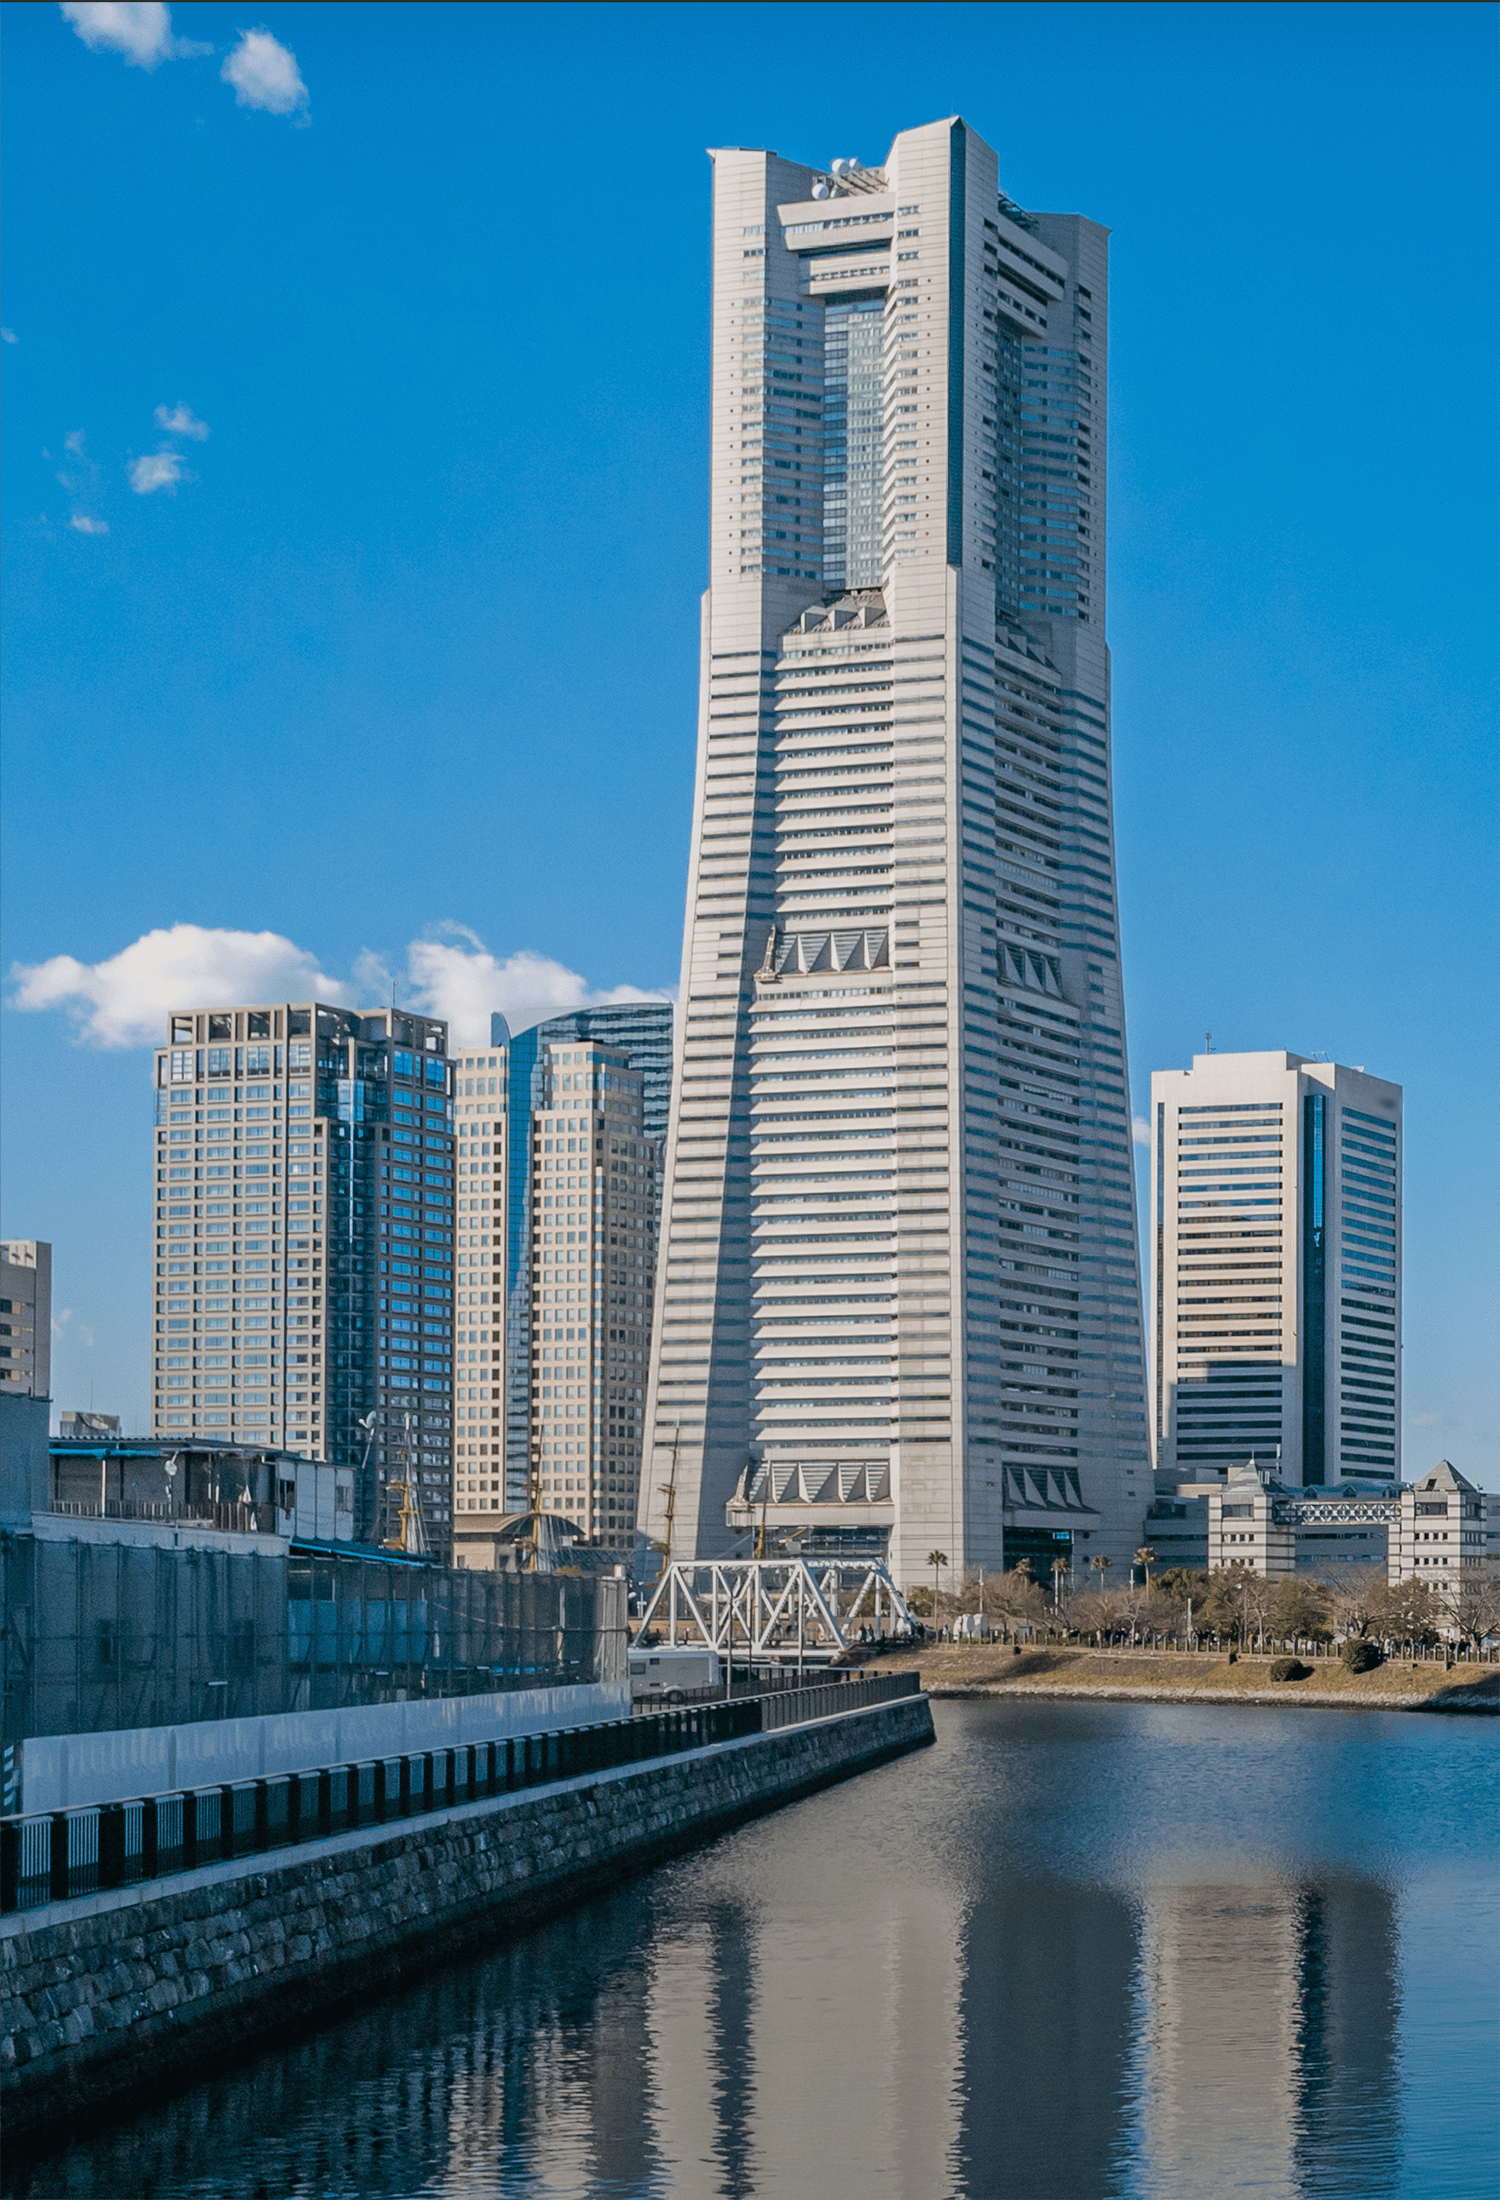 横浜ランドマークタワーと周囲のビルの風景